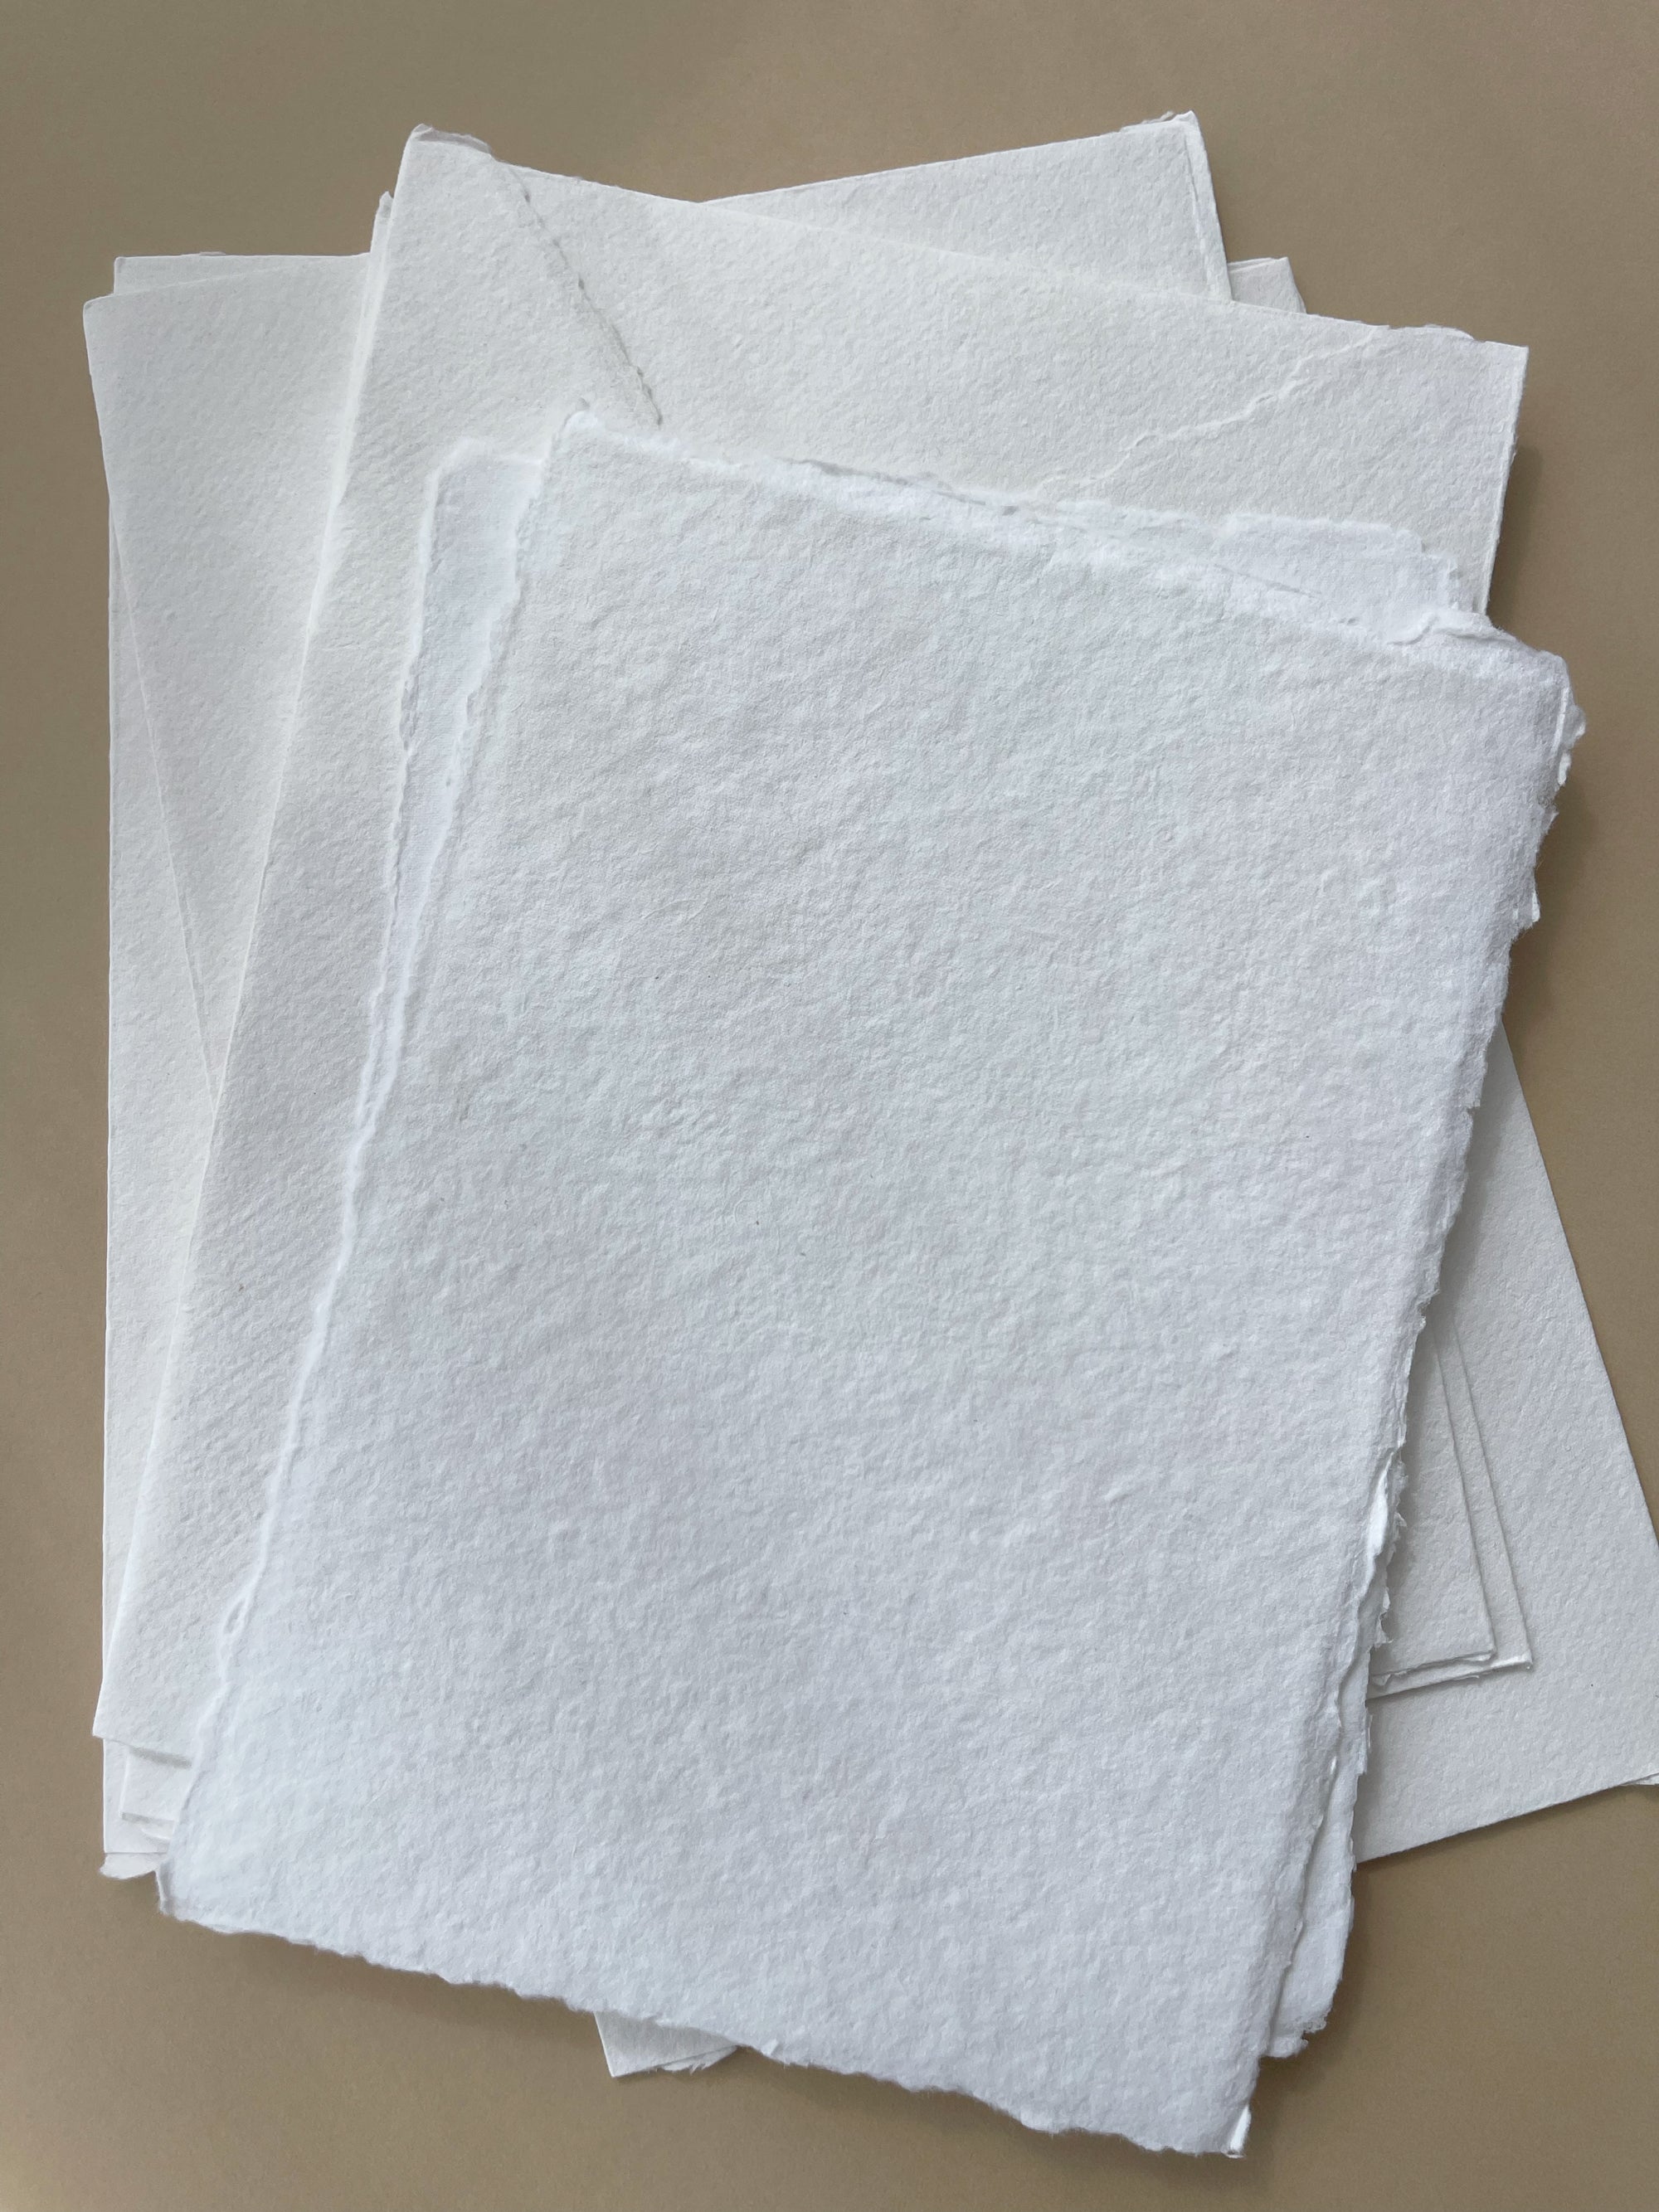 White Deckle Edge Cotton Rag Envelopes